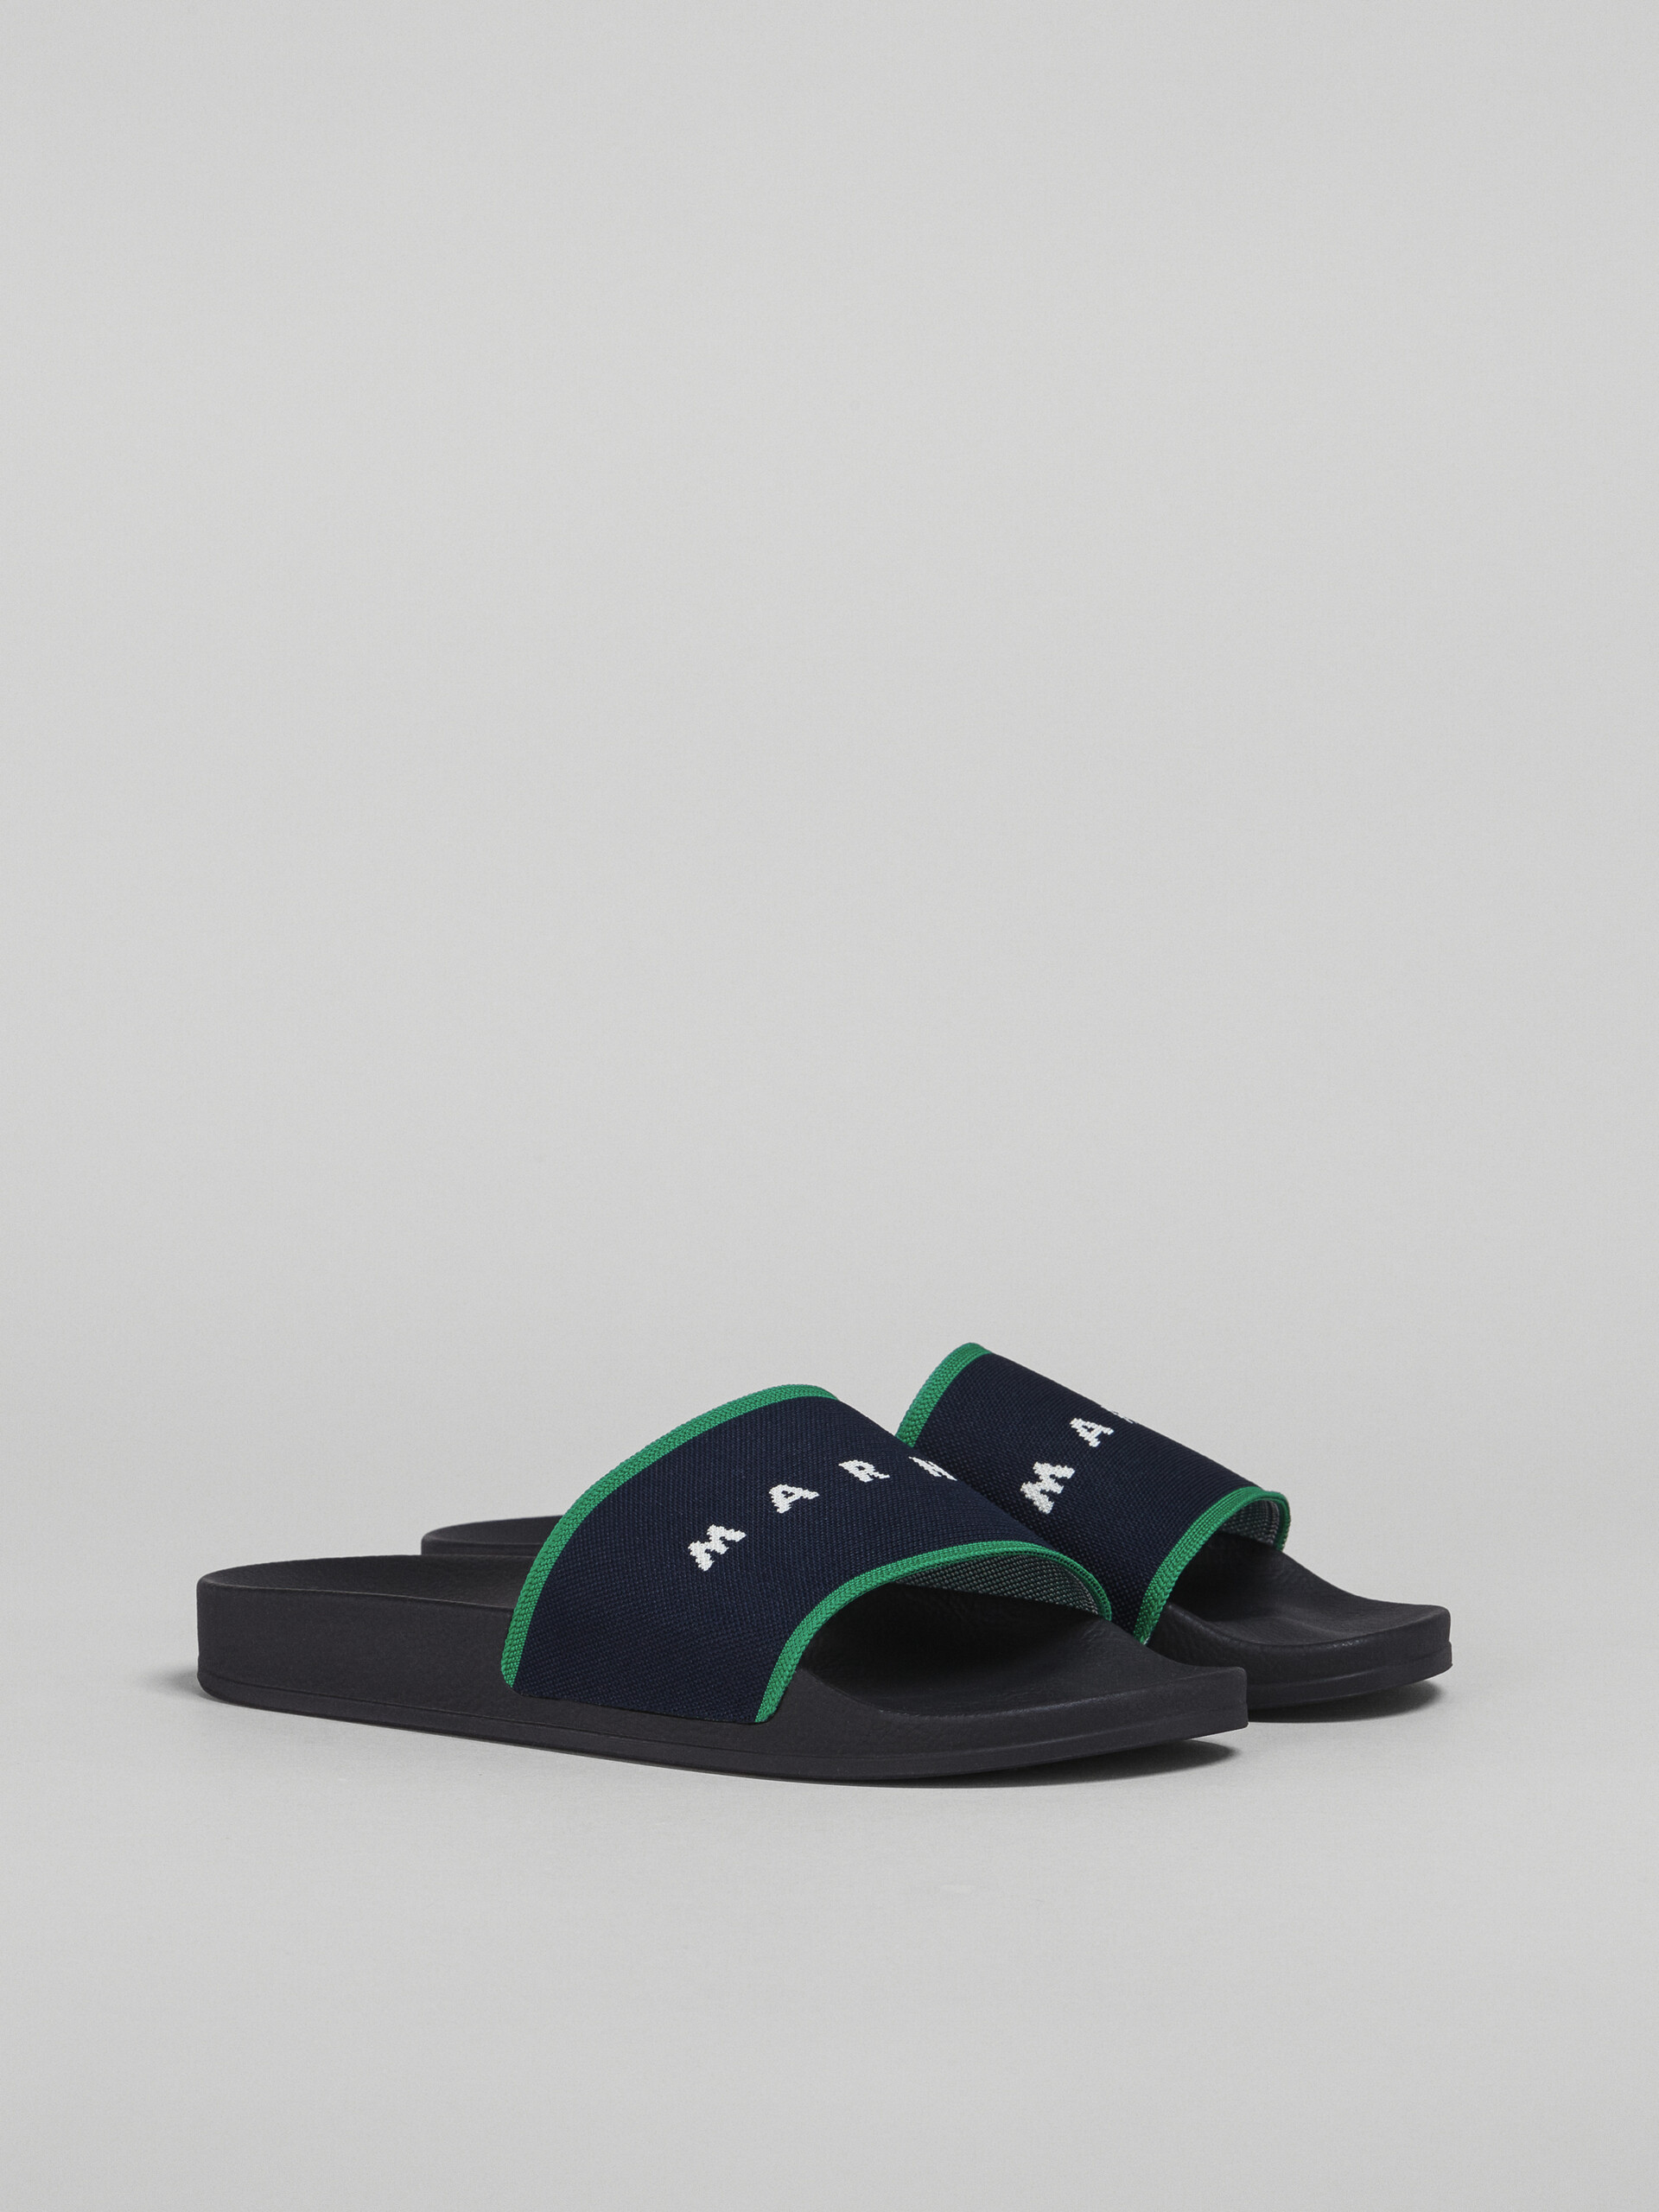 Blue black logo jacquard rubber slide - Sandals - Image 2